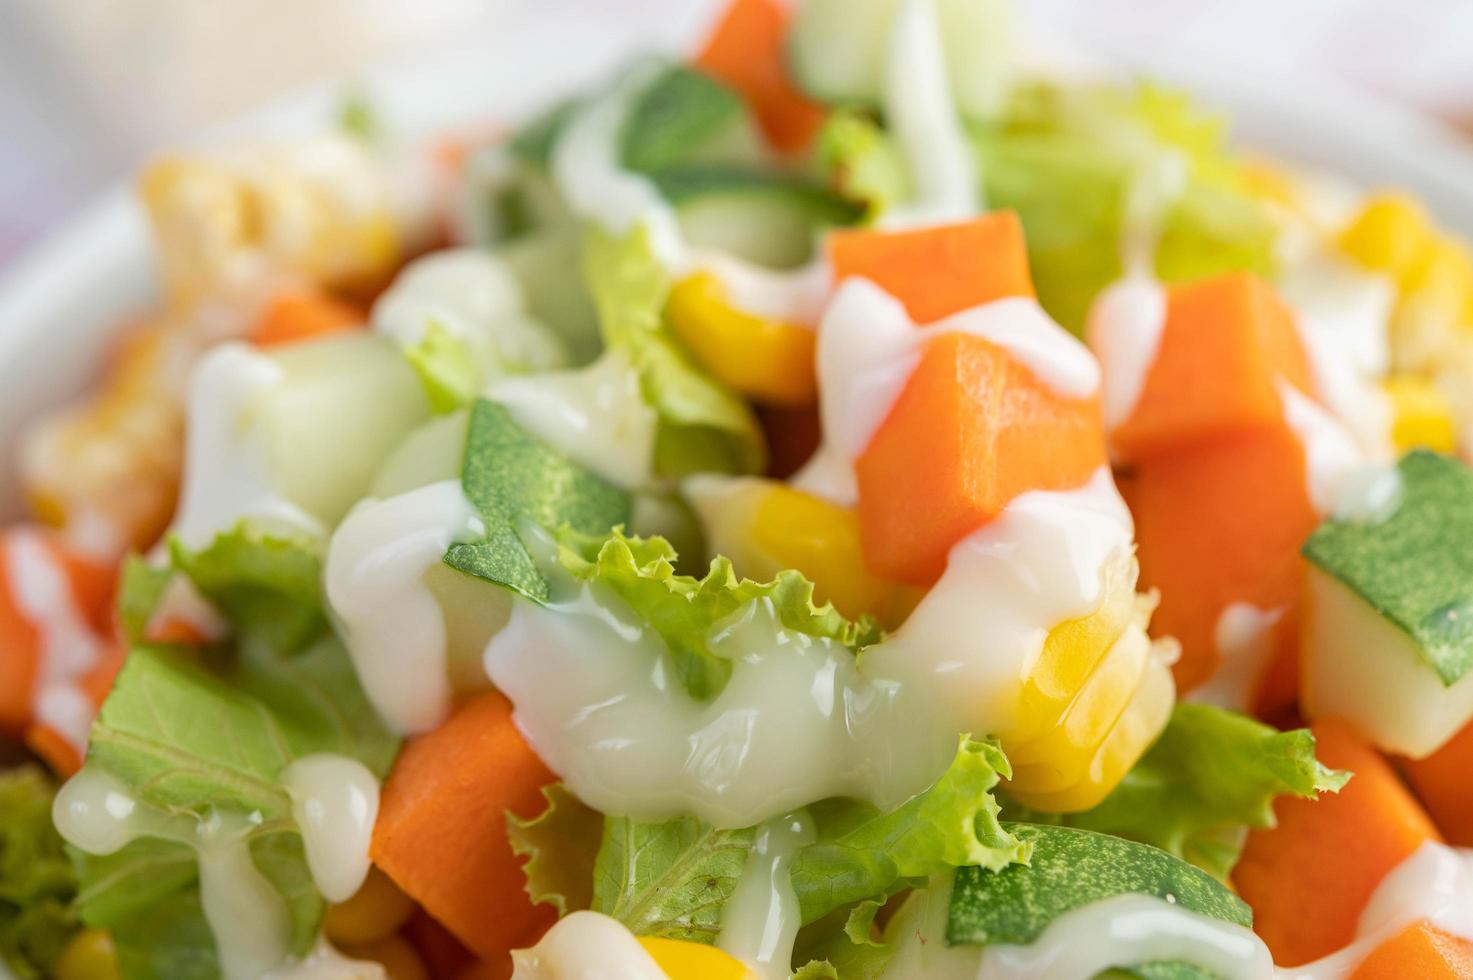 salade de concombre, maïs, carottes et laitue photo